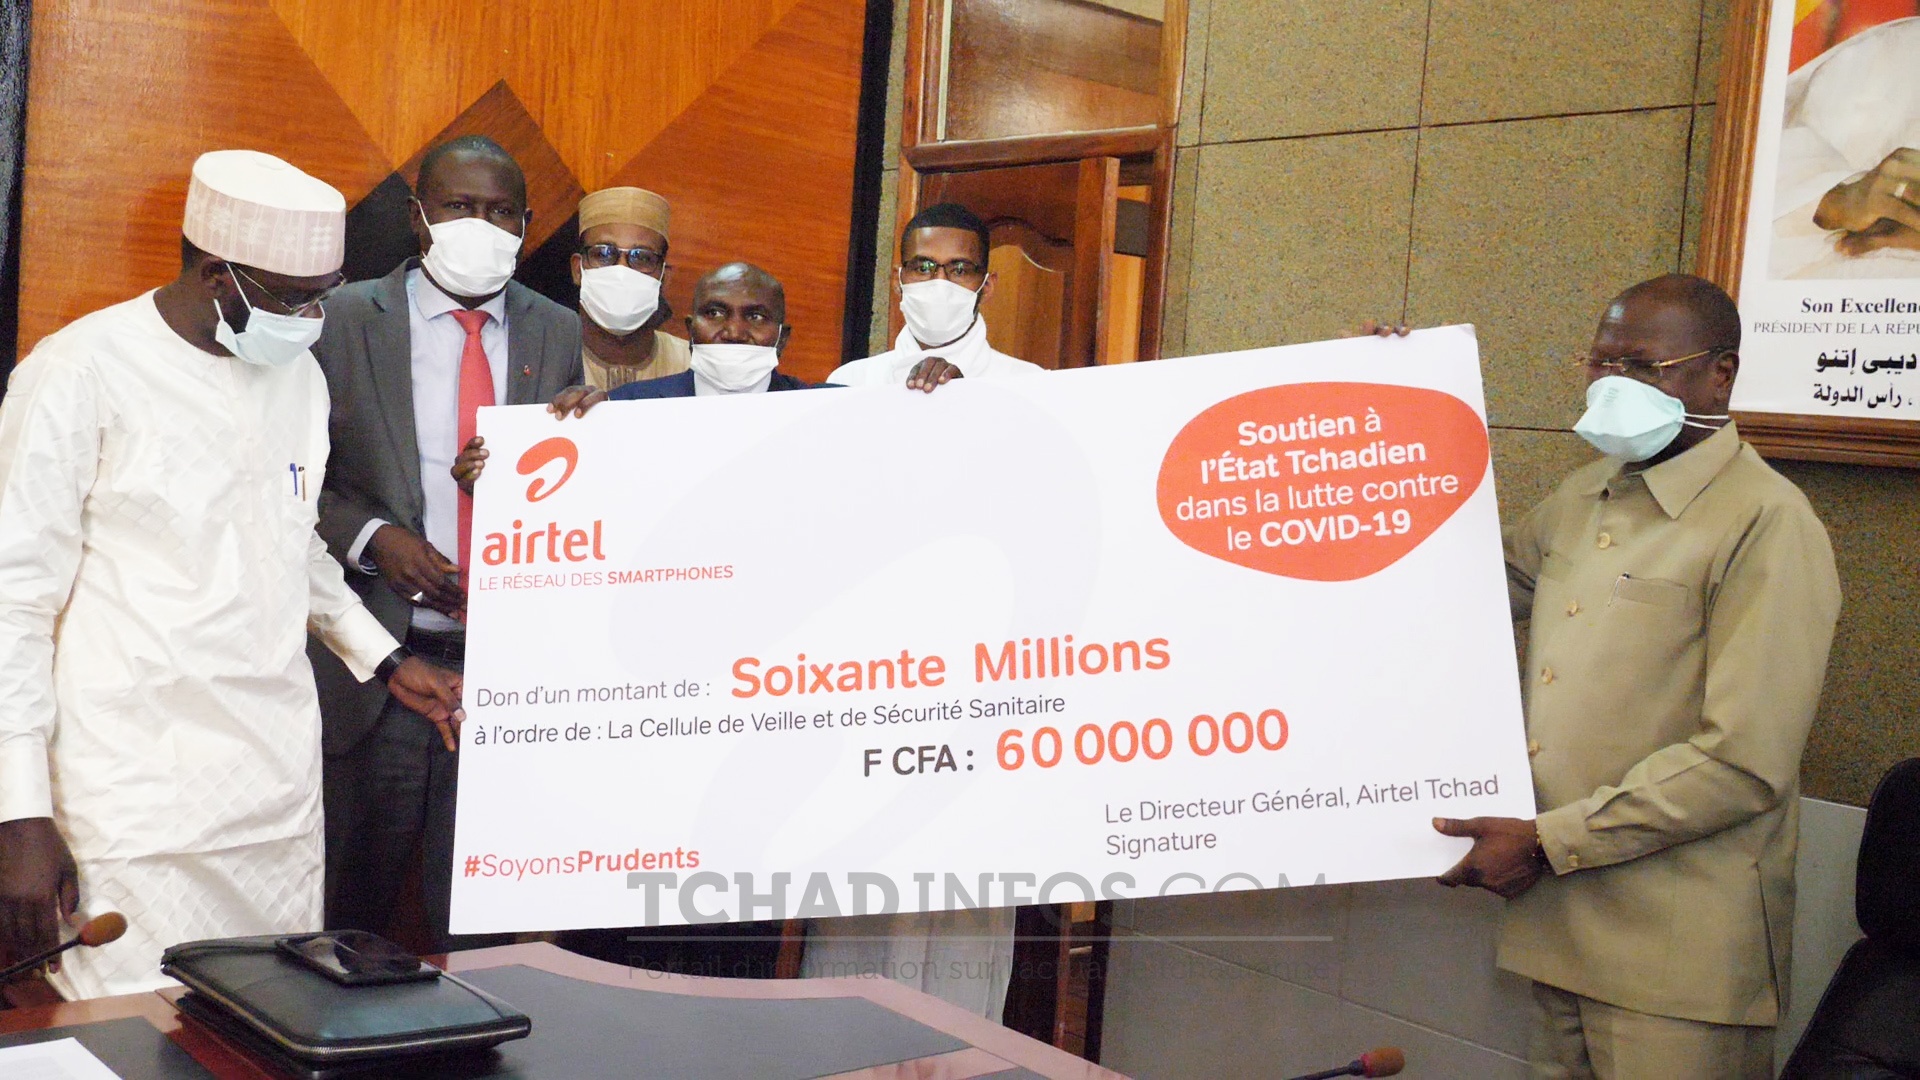 Coronavirus : Airtel Tchad donne 60 Millions de FCFA pour soutenir les Agents de Santé